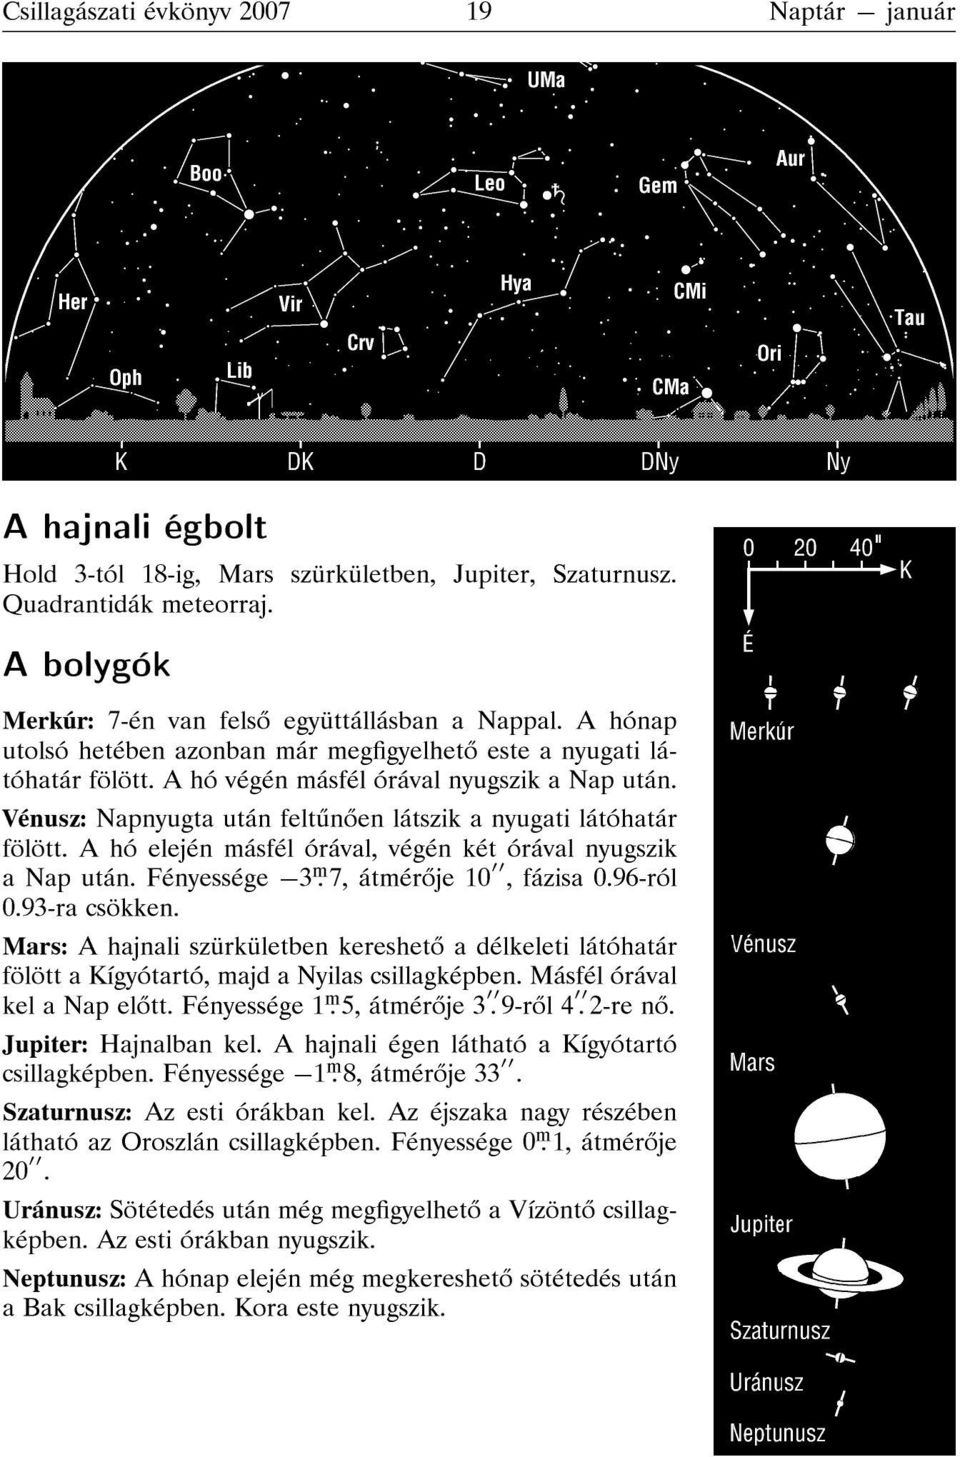 Vénusz: Napnyugta után felt n en látszik a nyugati látóhatár fölött. A hó elején másfél órával, végén két órával nyugszik a Nap után. Fényessége {3 ṃ 7, átmér je 10, fázisa 0.96-ról 0.93-ra csökken.